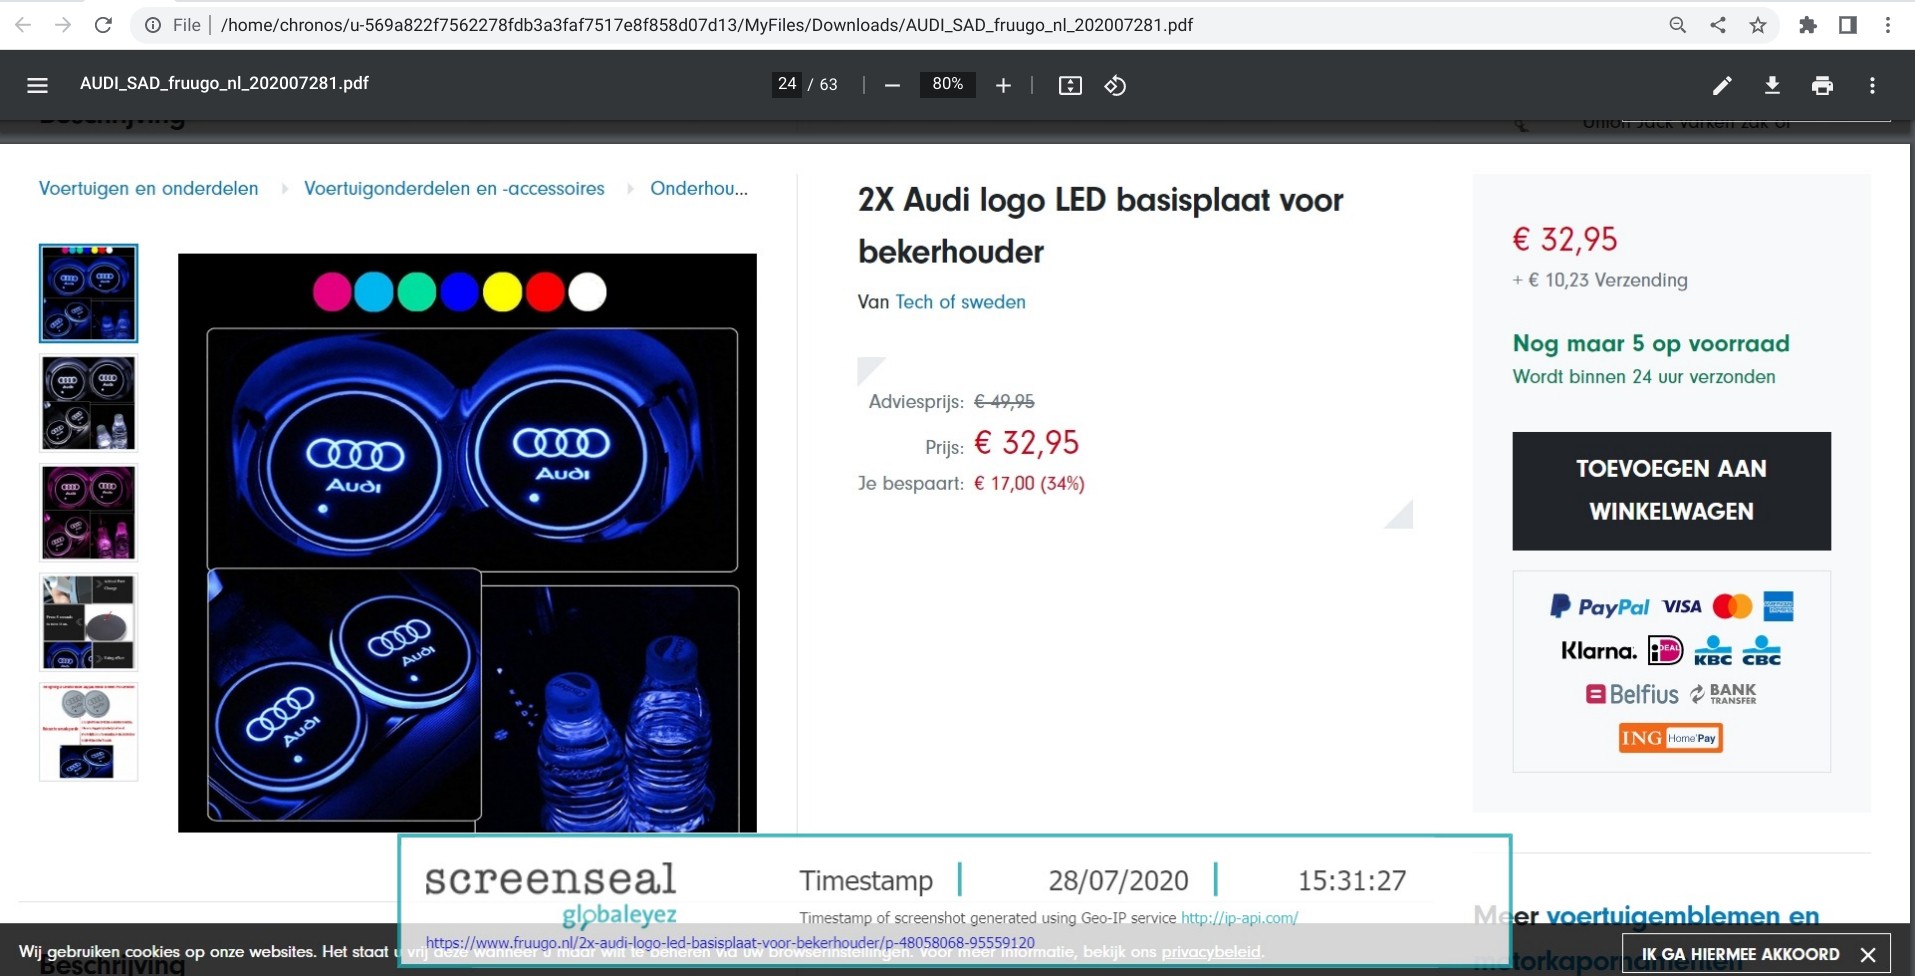 Screenshot von fruugo.nl mit einem potenziell IP-rechtsverletzenden Produktangebot